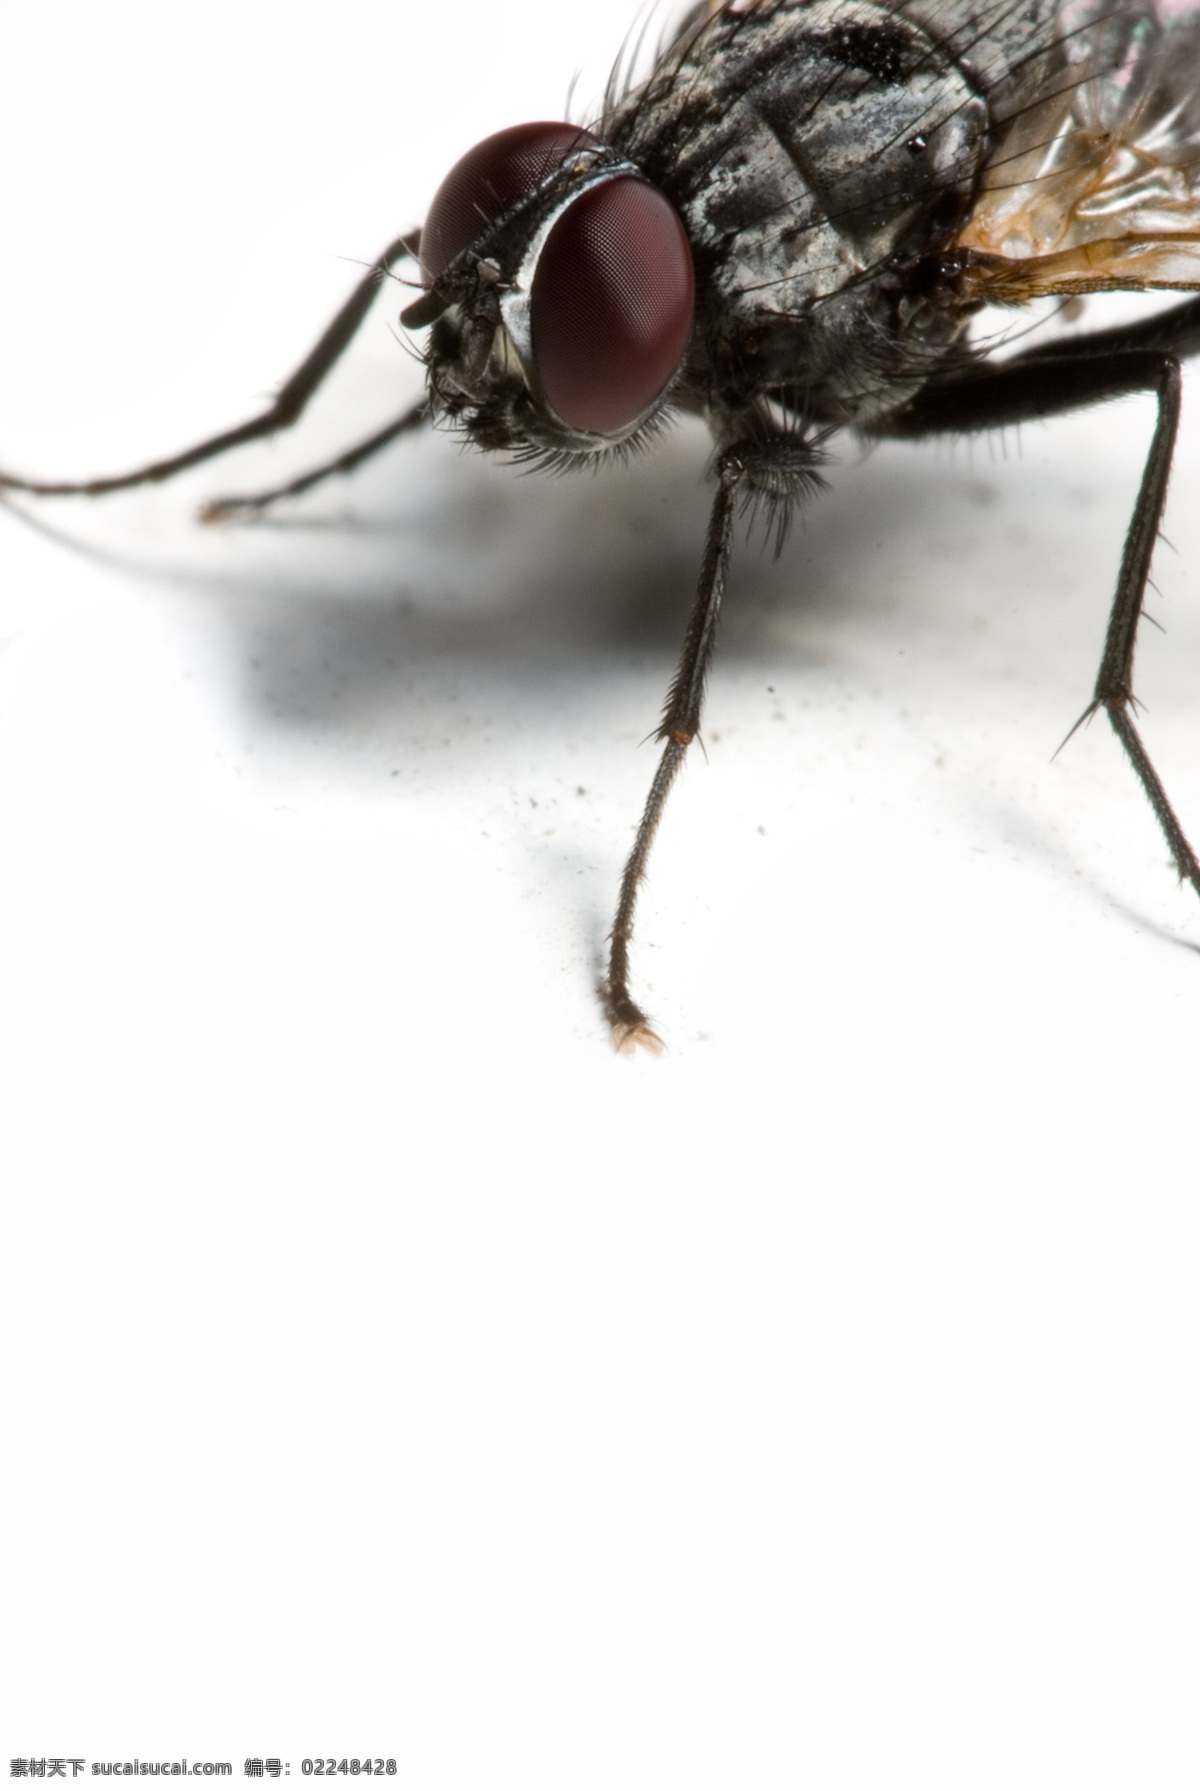 苍蝇 特写 昆虫 生物世界 微距 苍蝇特写 害虫 触角